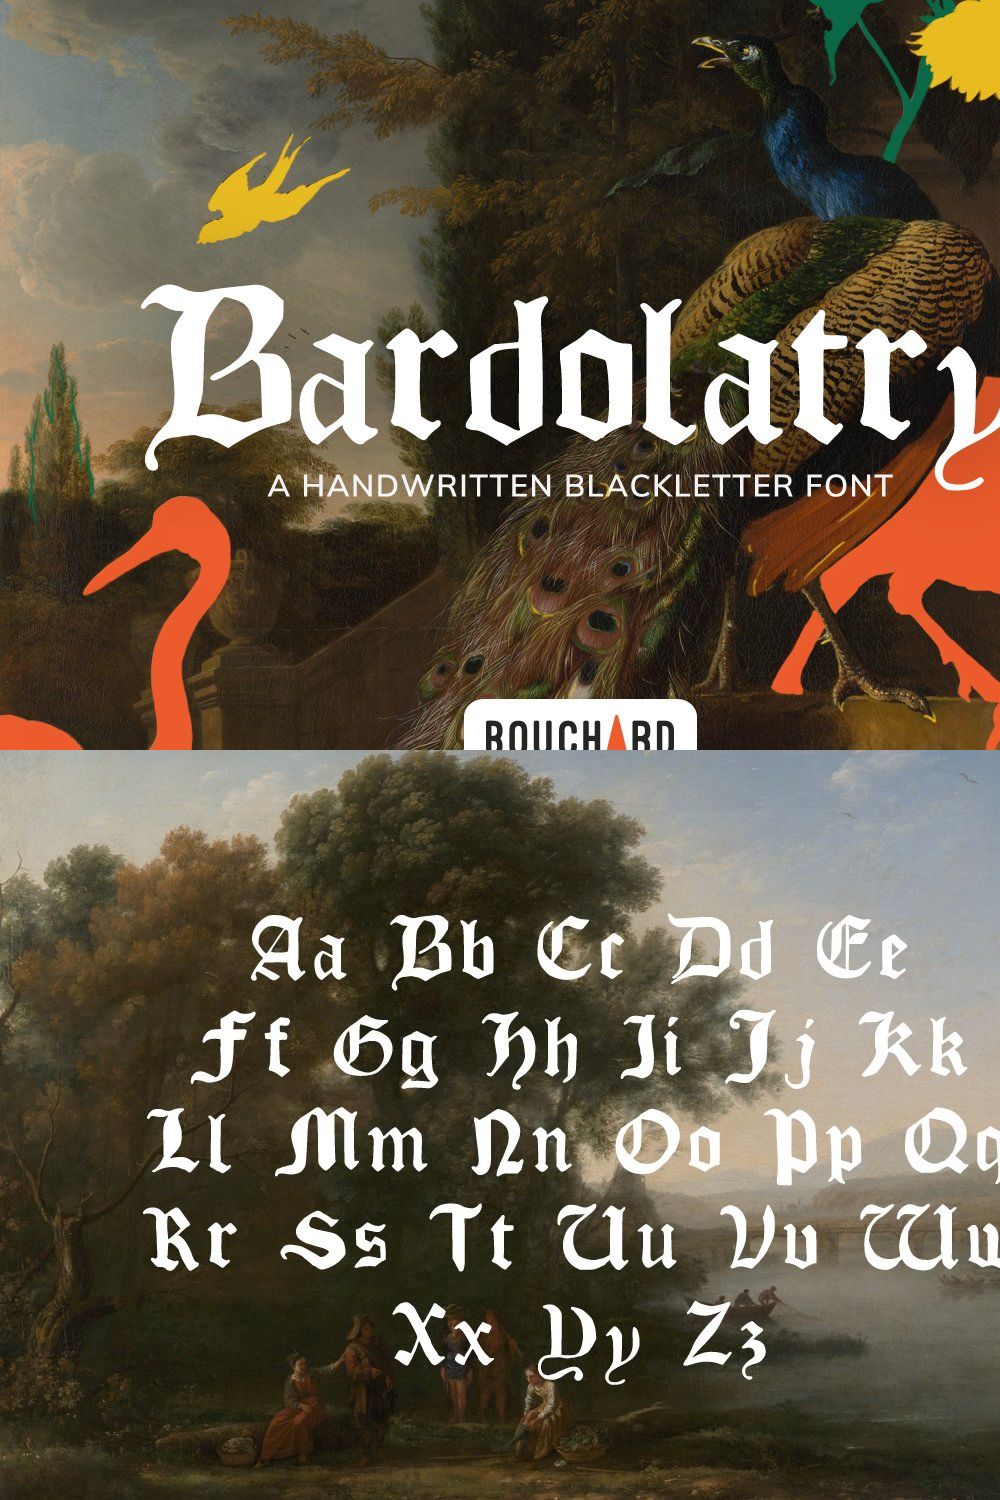 Bardolatry Handwritten Blackletter pinterest preview image.